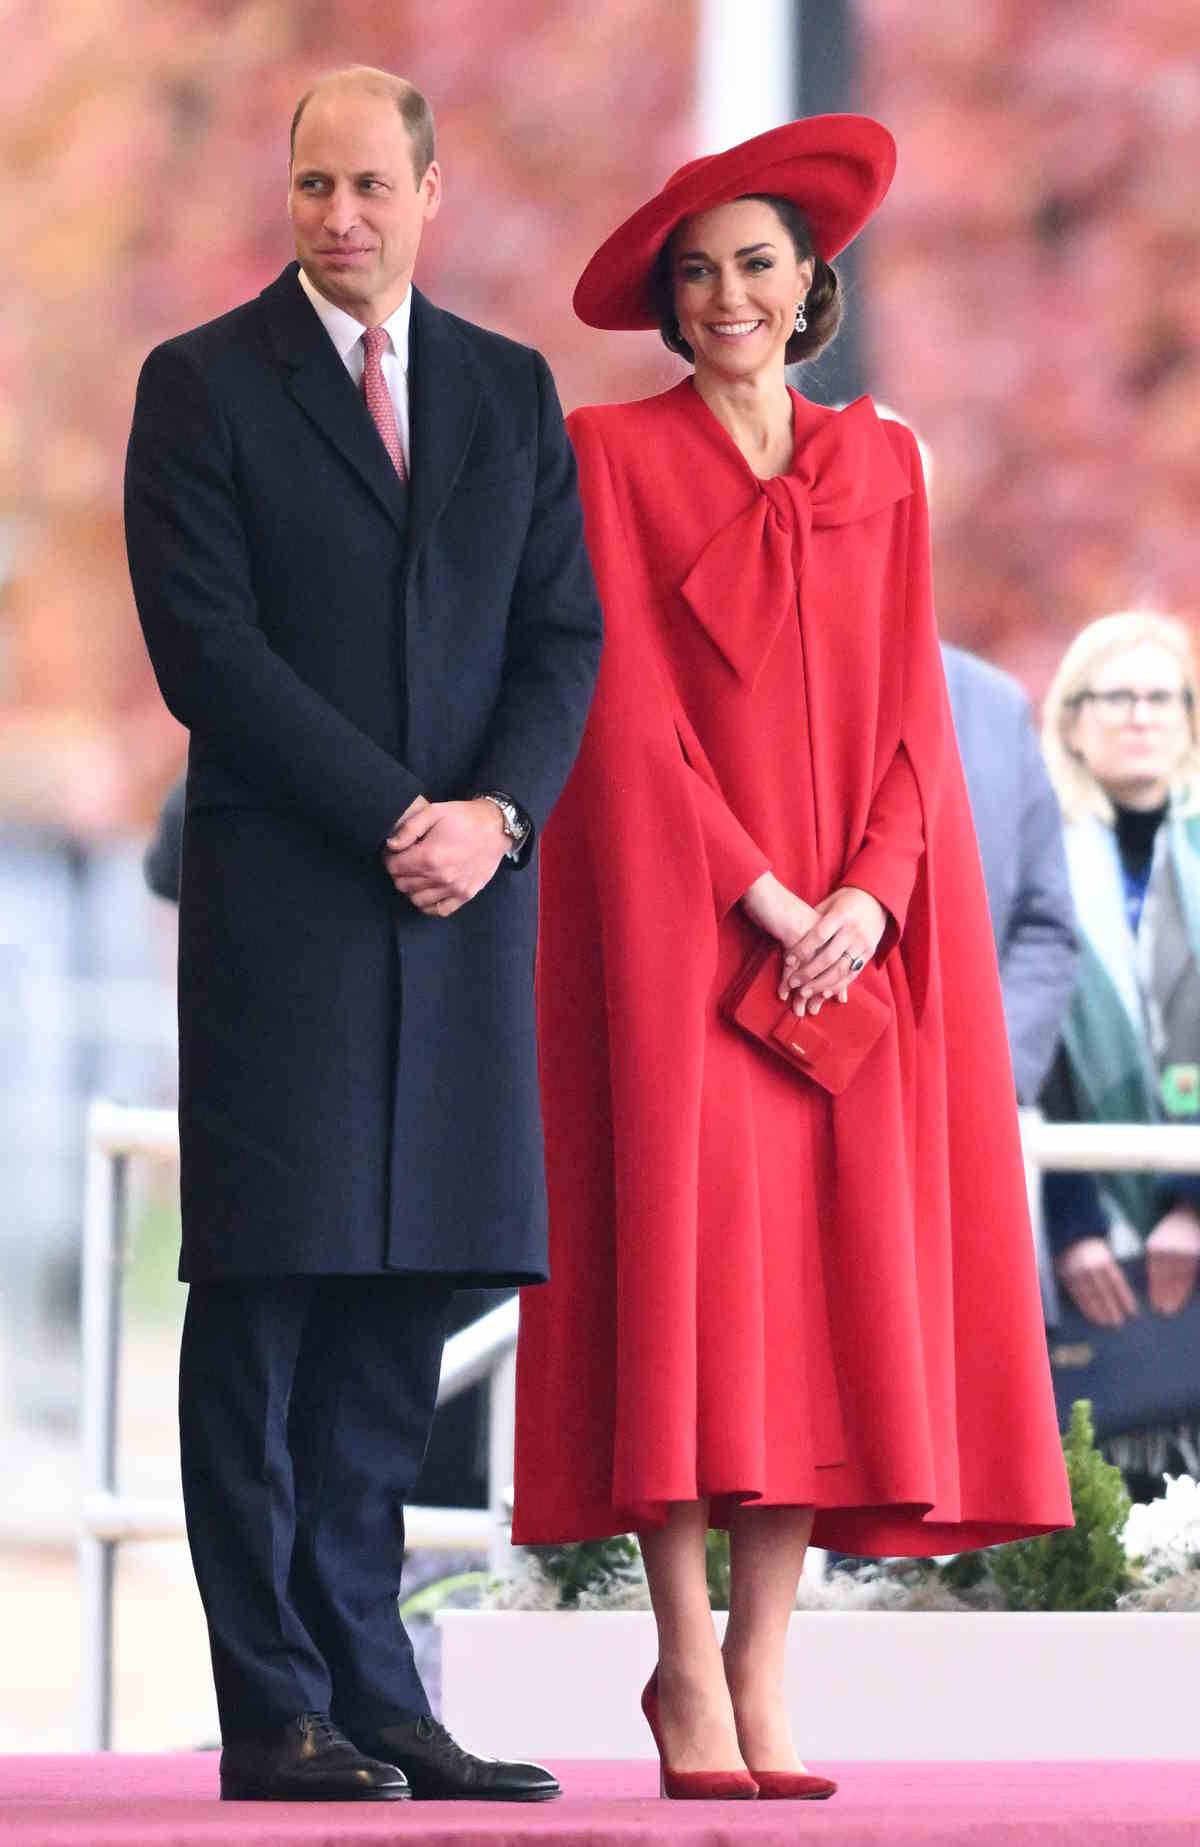 Kate Middleton w modnej czerwieni. Księżna Walii tego dnia zachwyciła także czerwoną suknią projektu Catherine Walker z efektowną kokardą, którą uzupełniła eleganckim kapeluszem i peleryną.